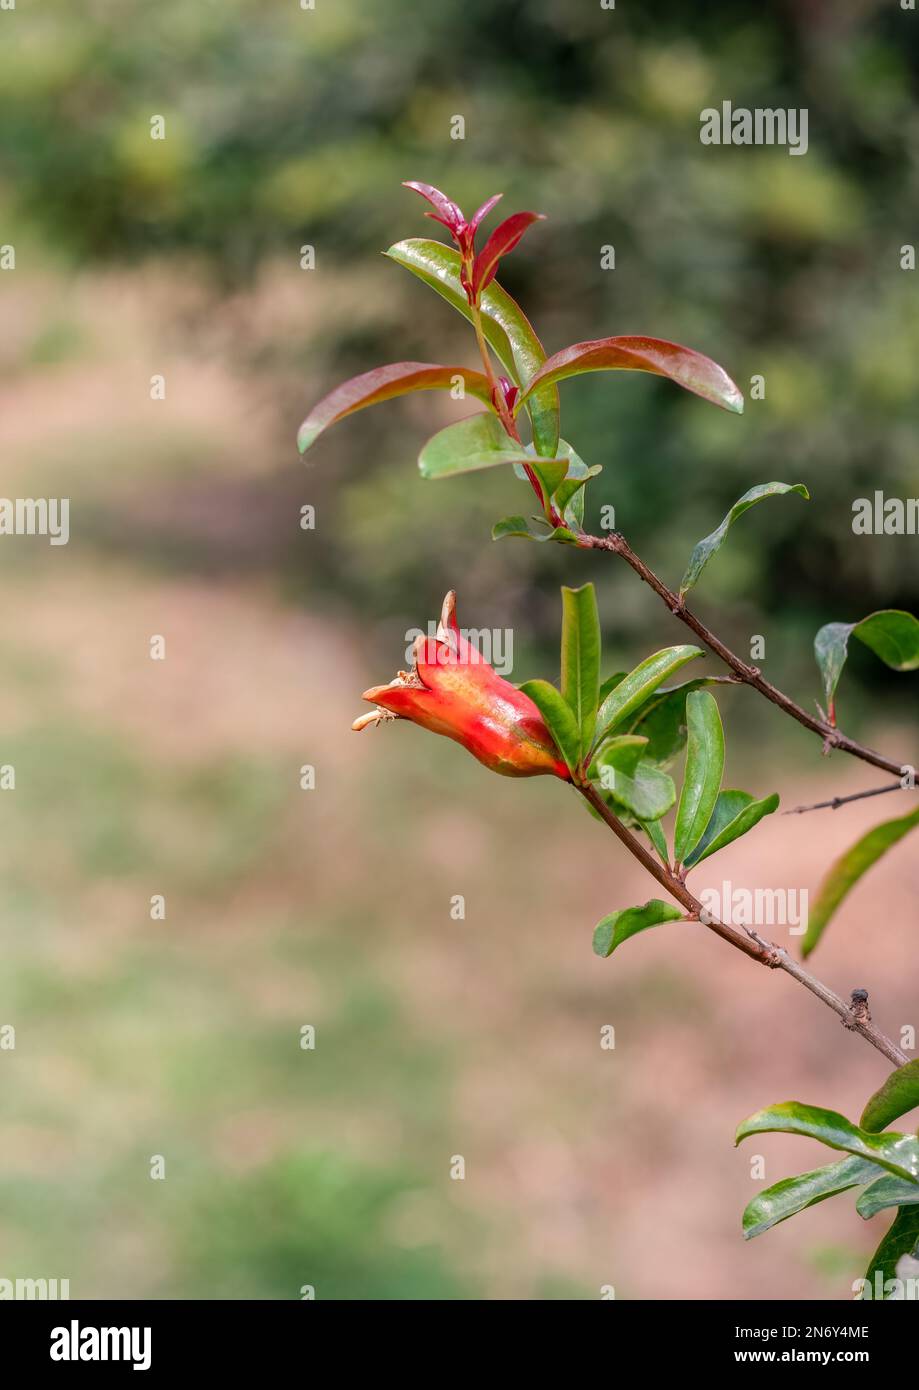 Selektiv fokussierte Granatapfelblume auf einem Zweig im Garten Stockfoto